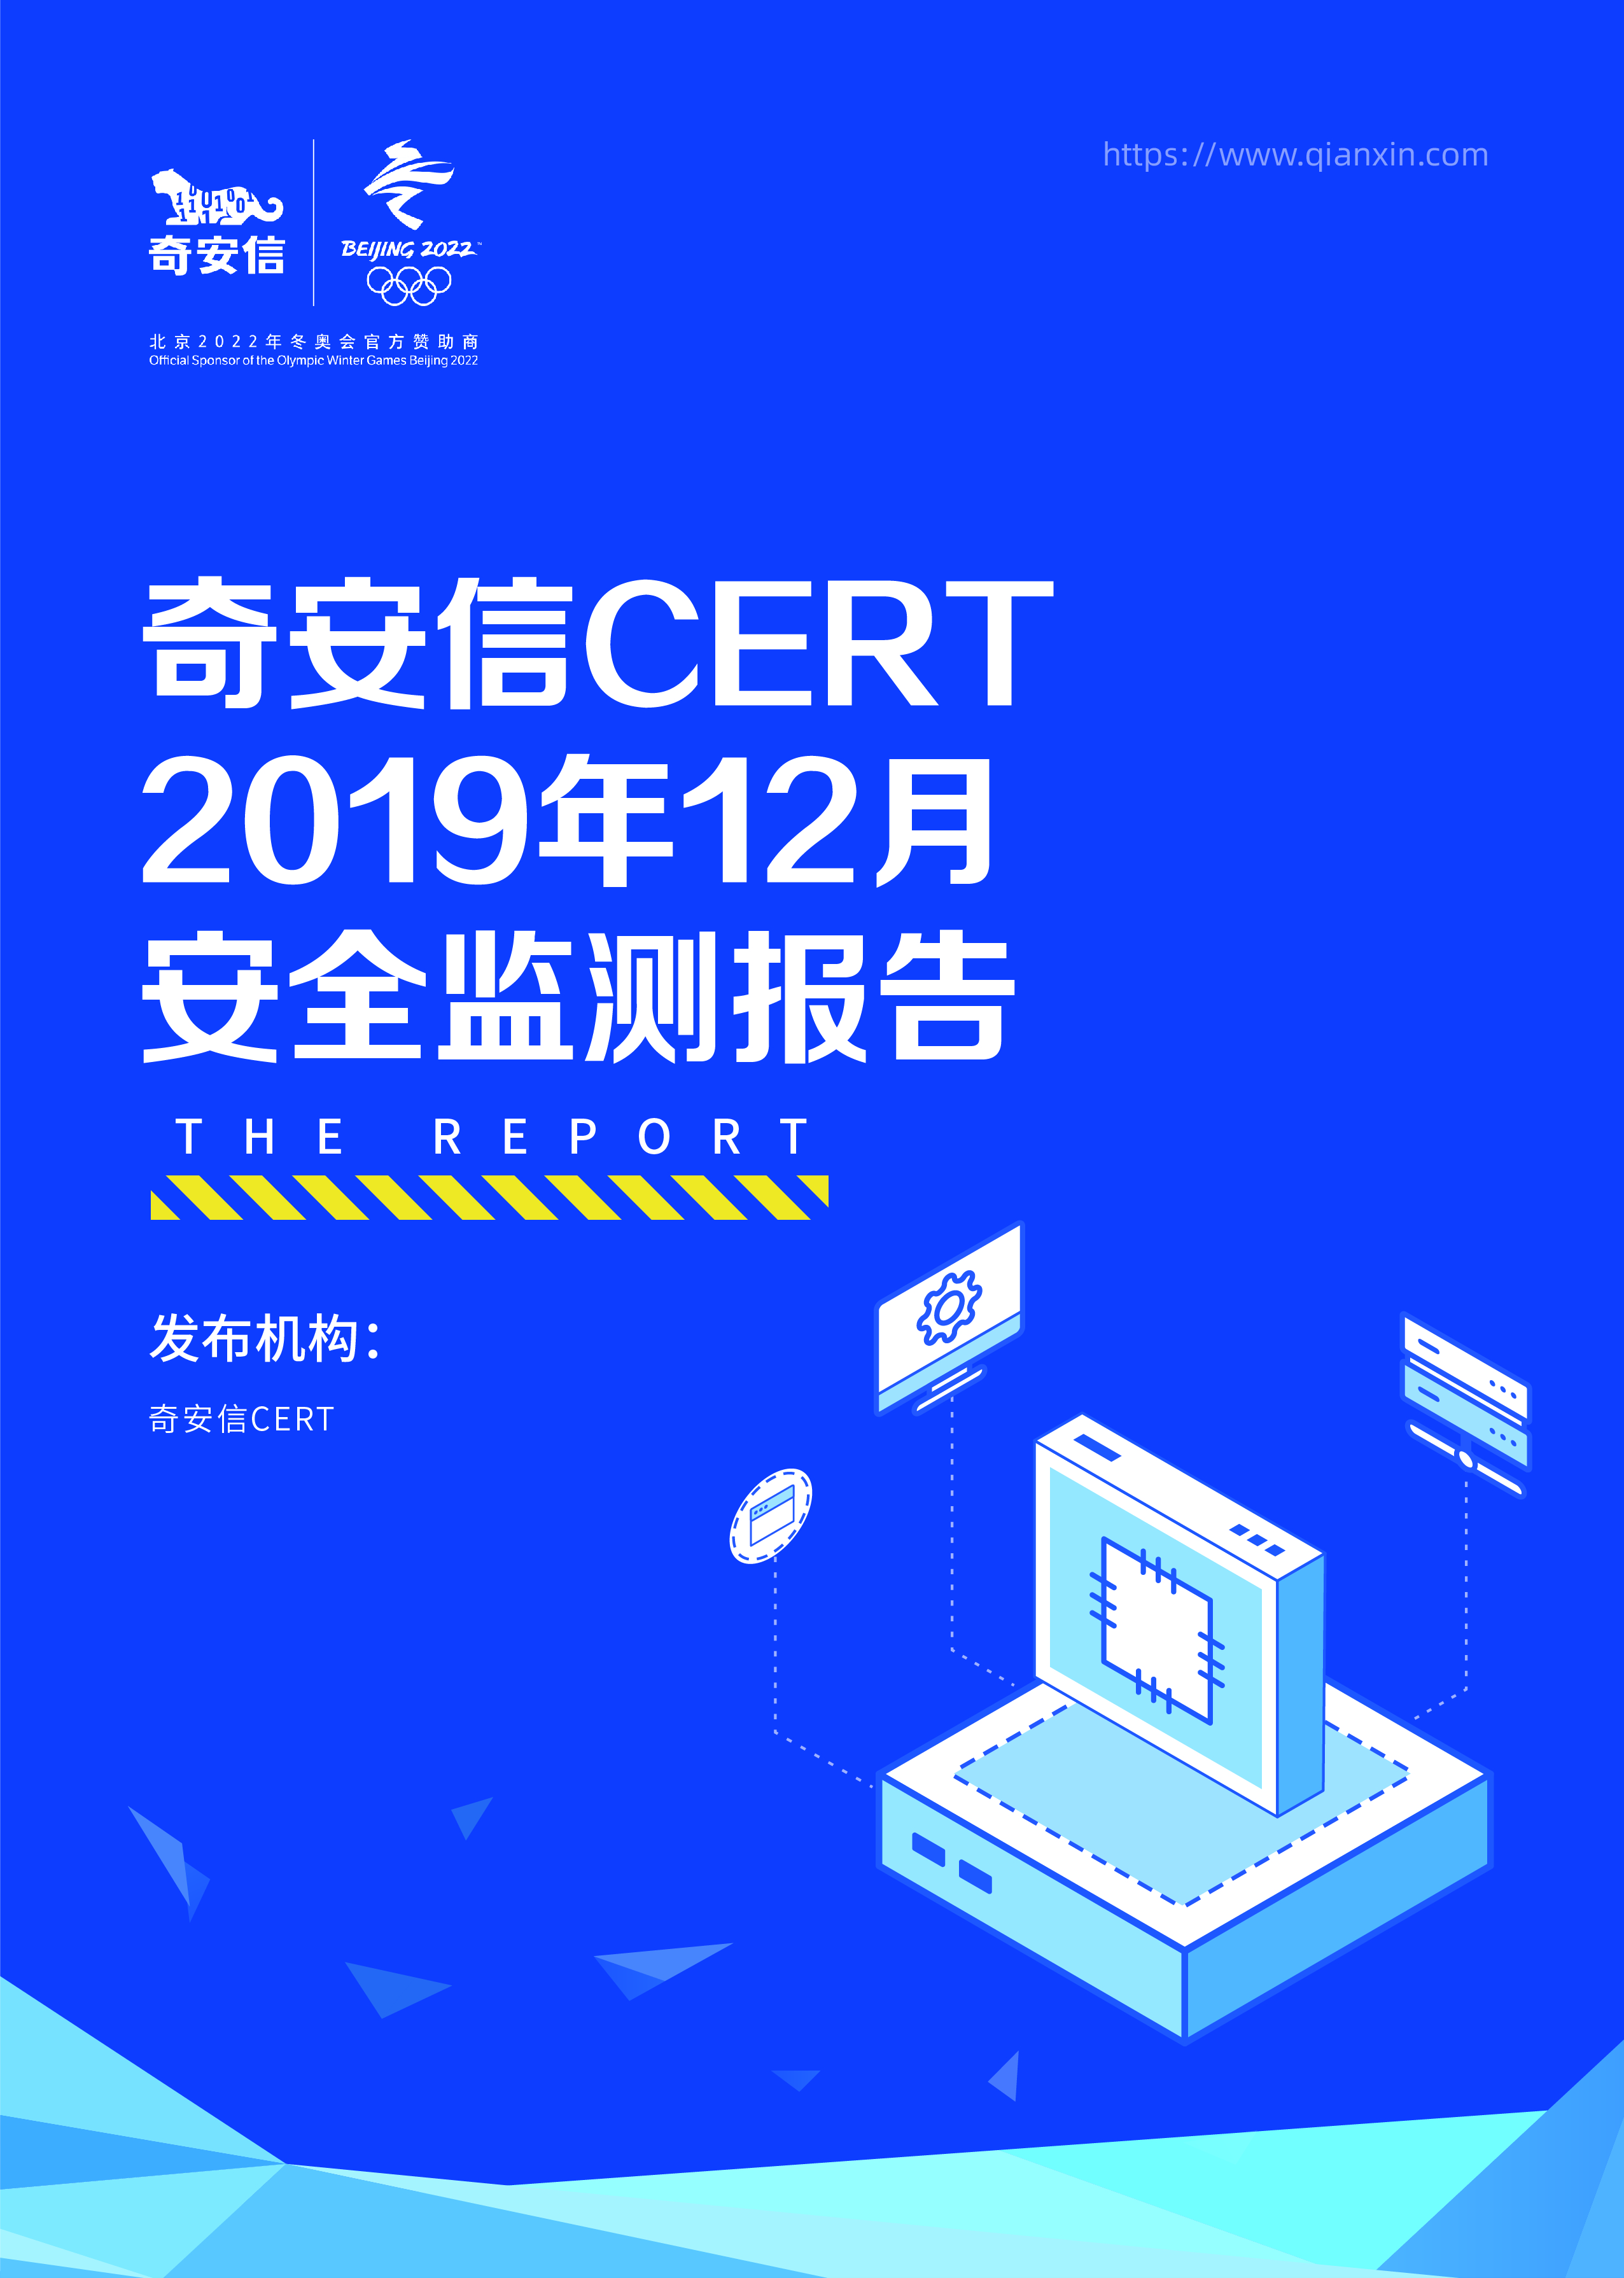 奇安信 CERT 2019年12月安全监测报告